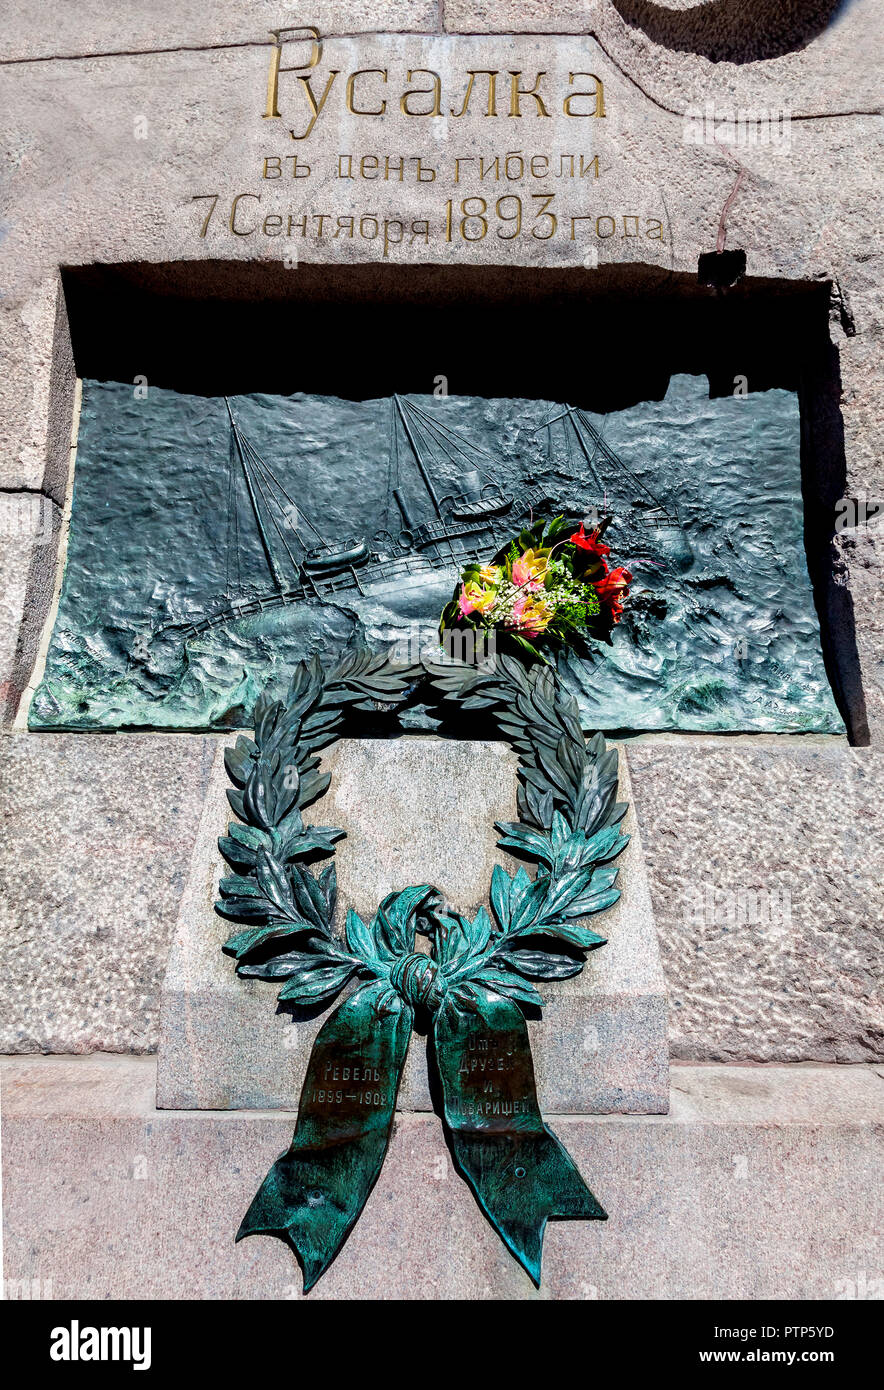 Russalka Memorial a Tallinn per la commemorazione del naufragio della nave da guerra russa Rusalka nel 1893 Foto Stock